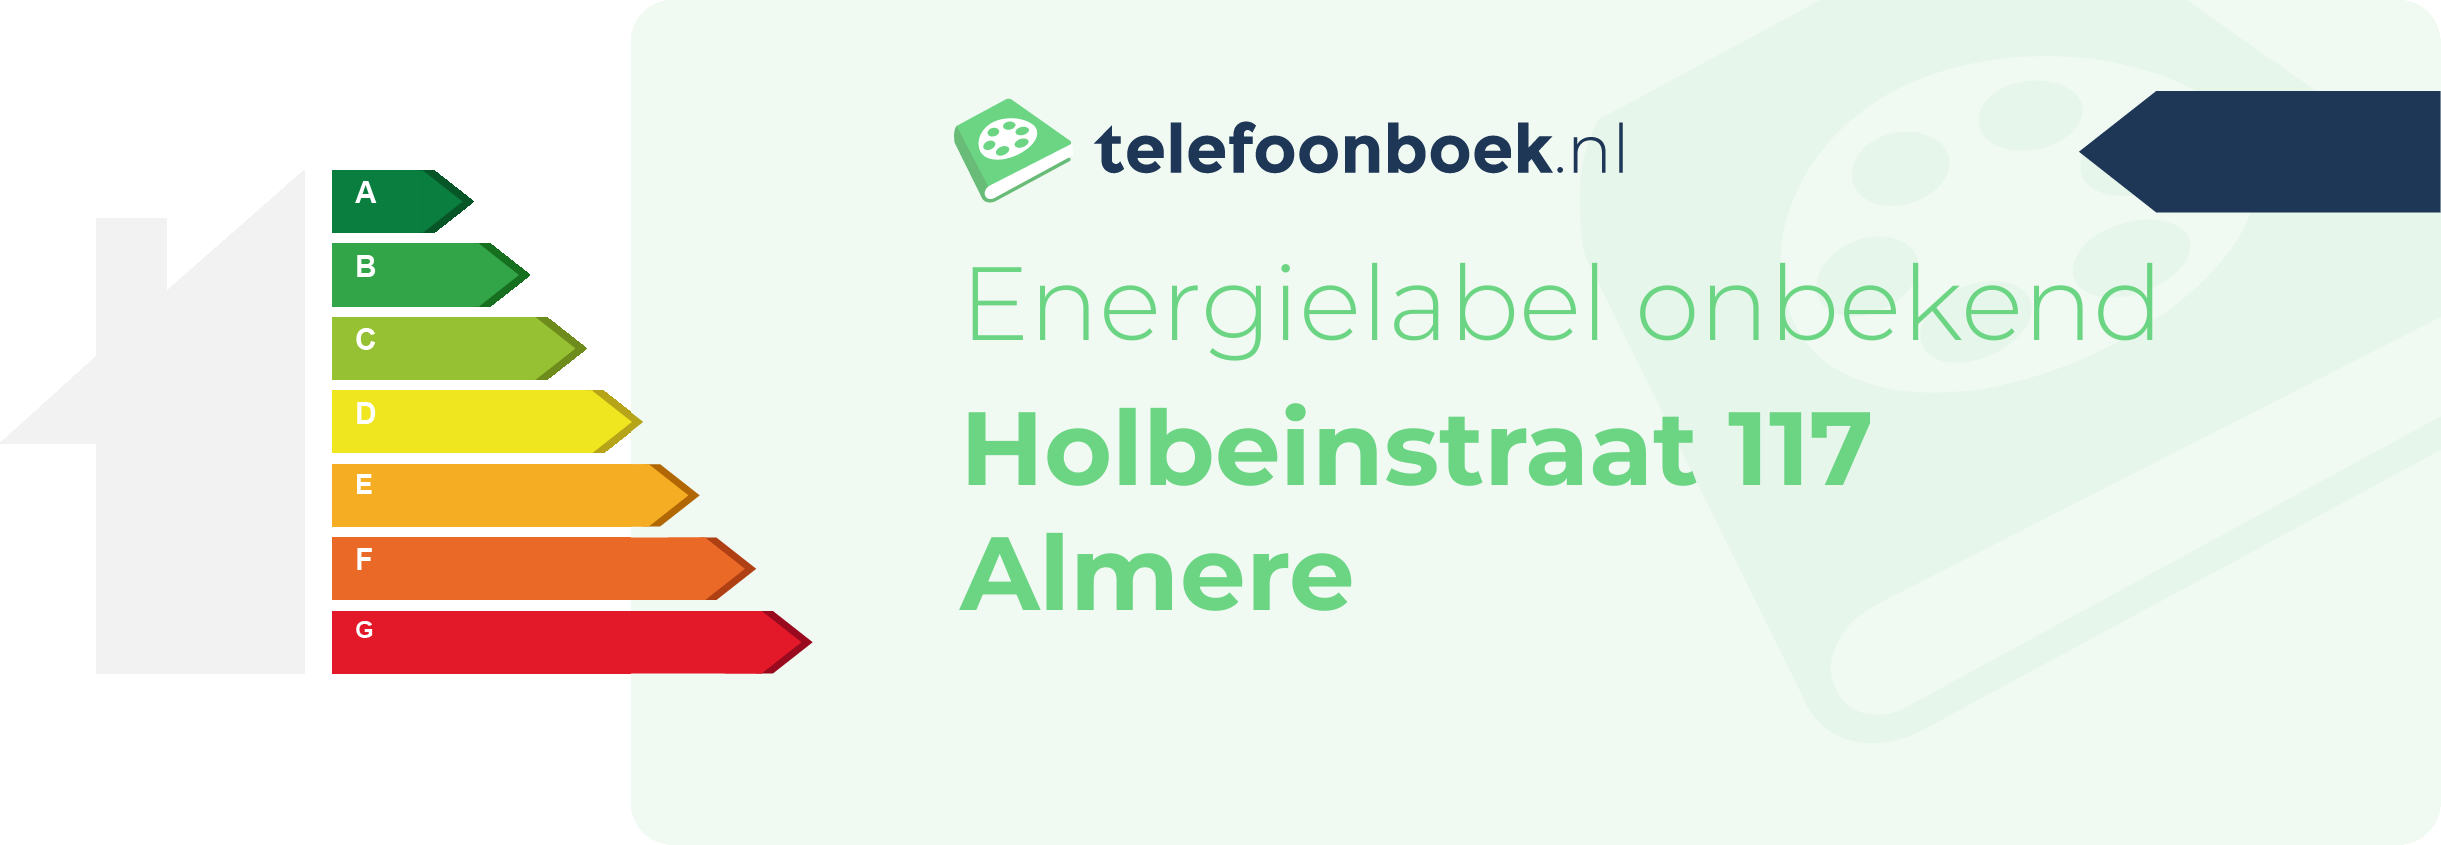 Energielabel Holbeinstraat 117 Almere